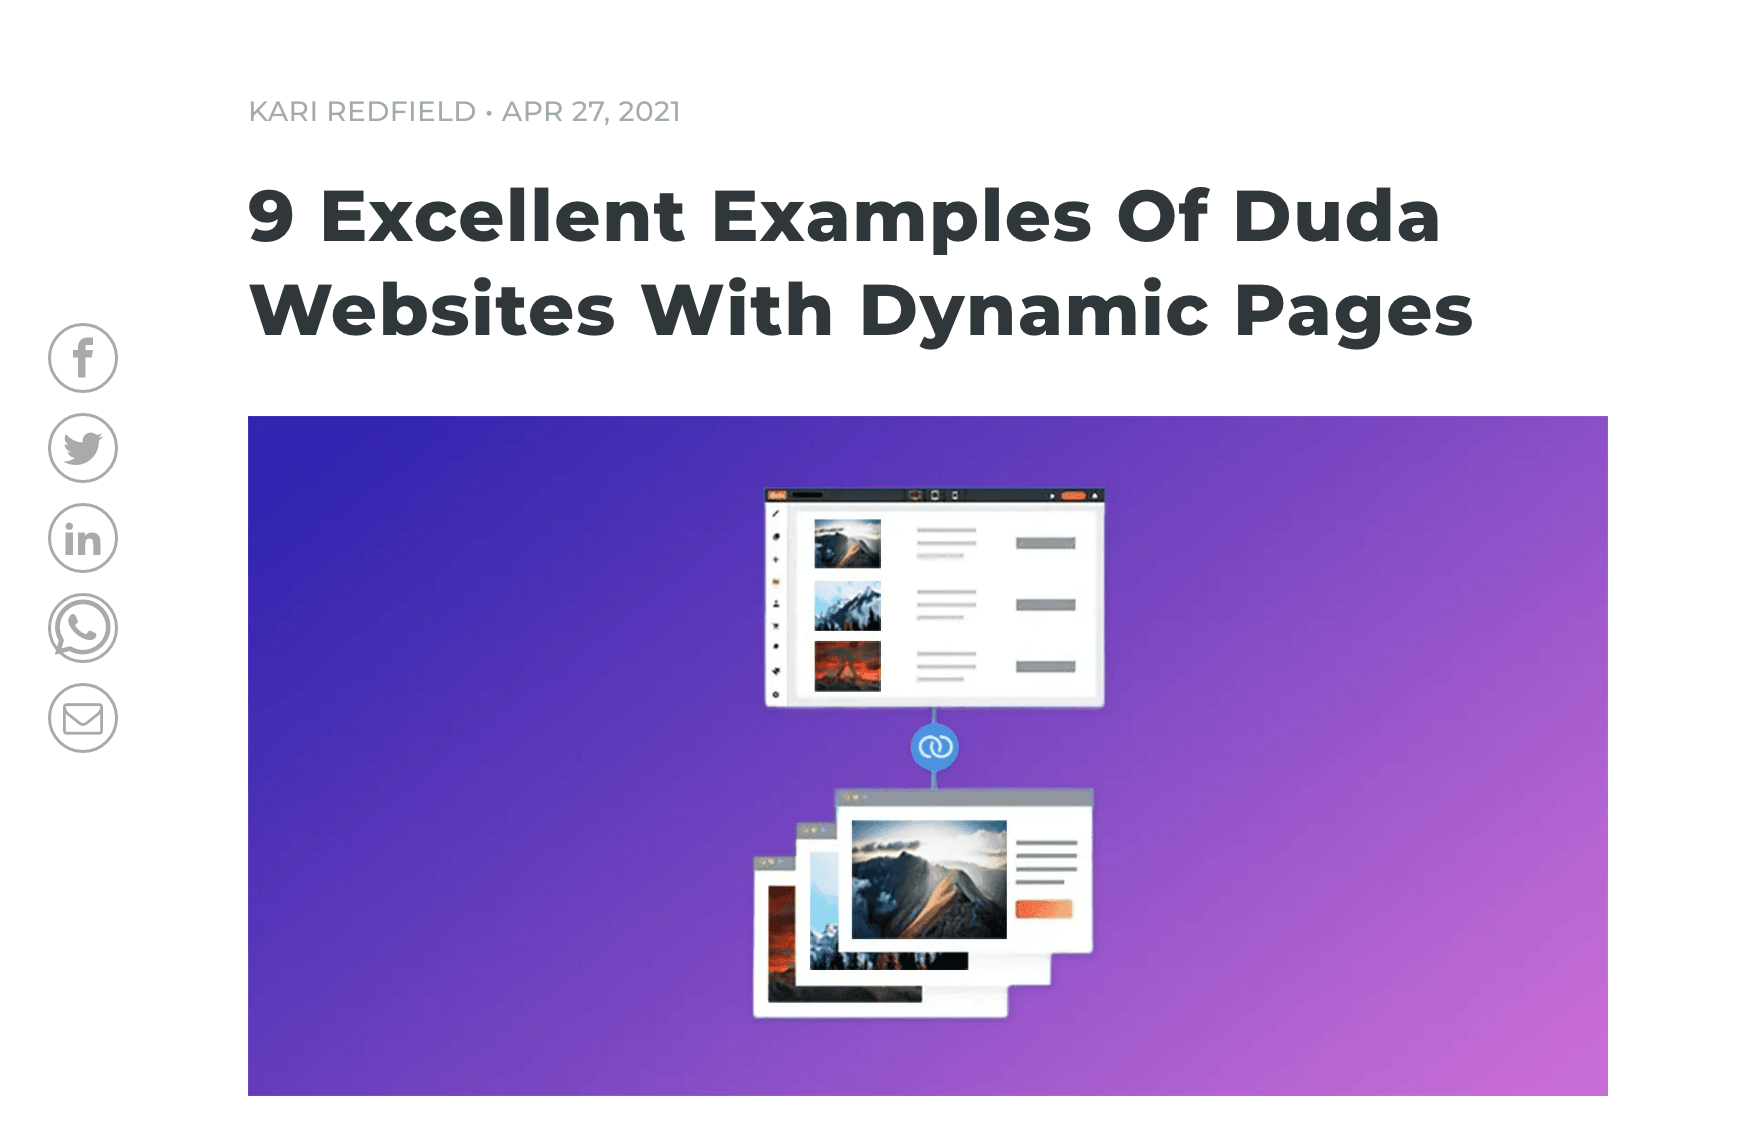 Exzellentes Webdesign  - Unsere Website wurde lobend erwähnt!